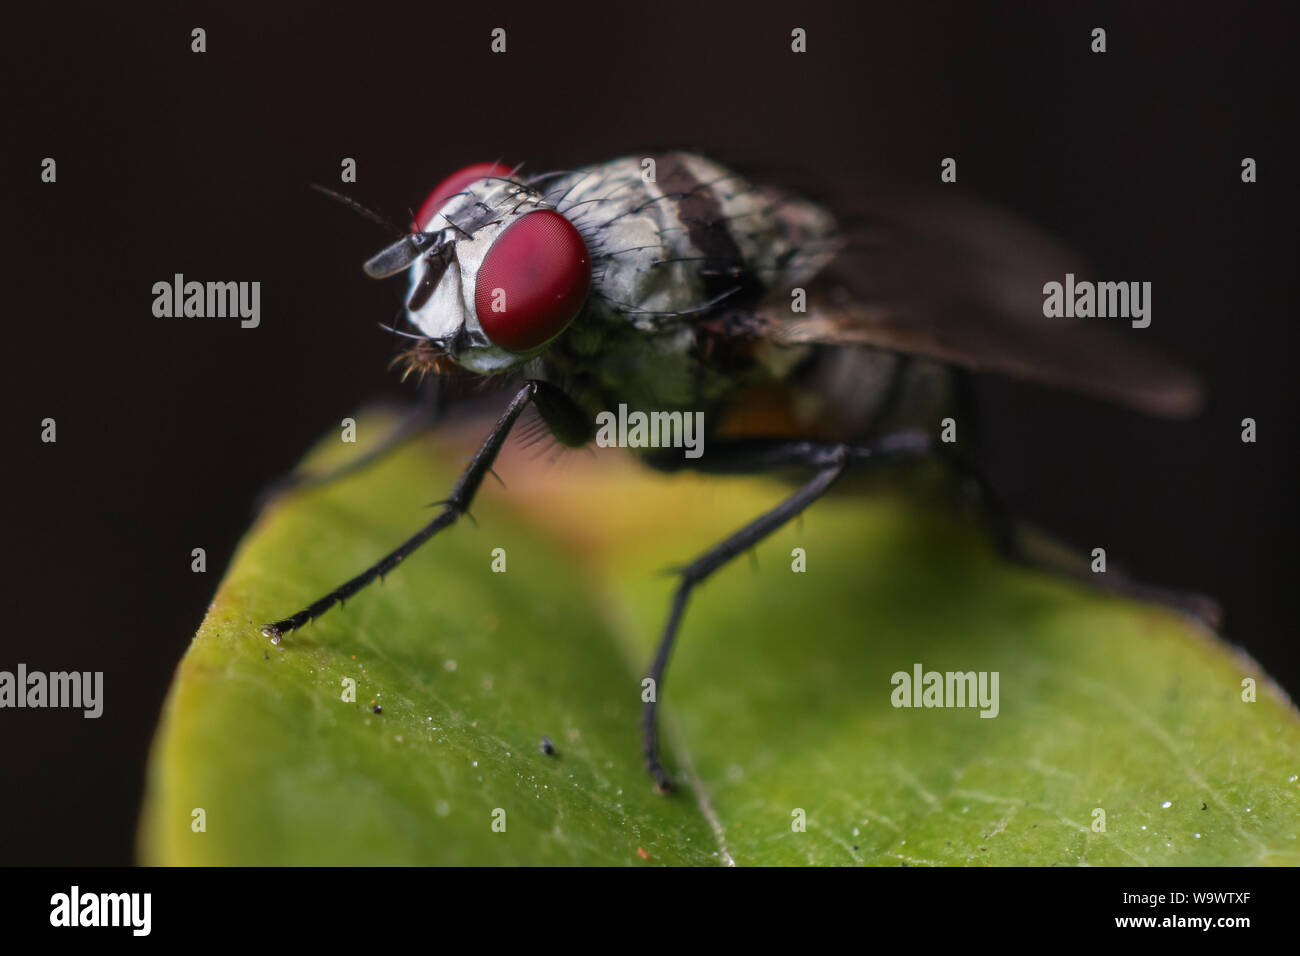 Alto Ingrandimento close-up di un giardino comune volare, che mostra la testa di insetto e gli occhi nei dettagli Foto Stock